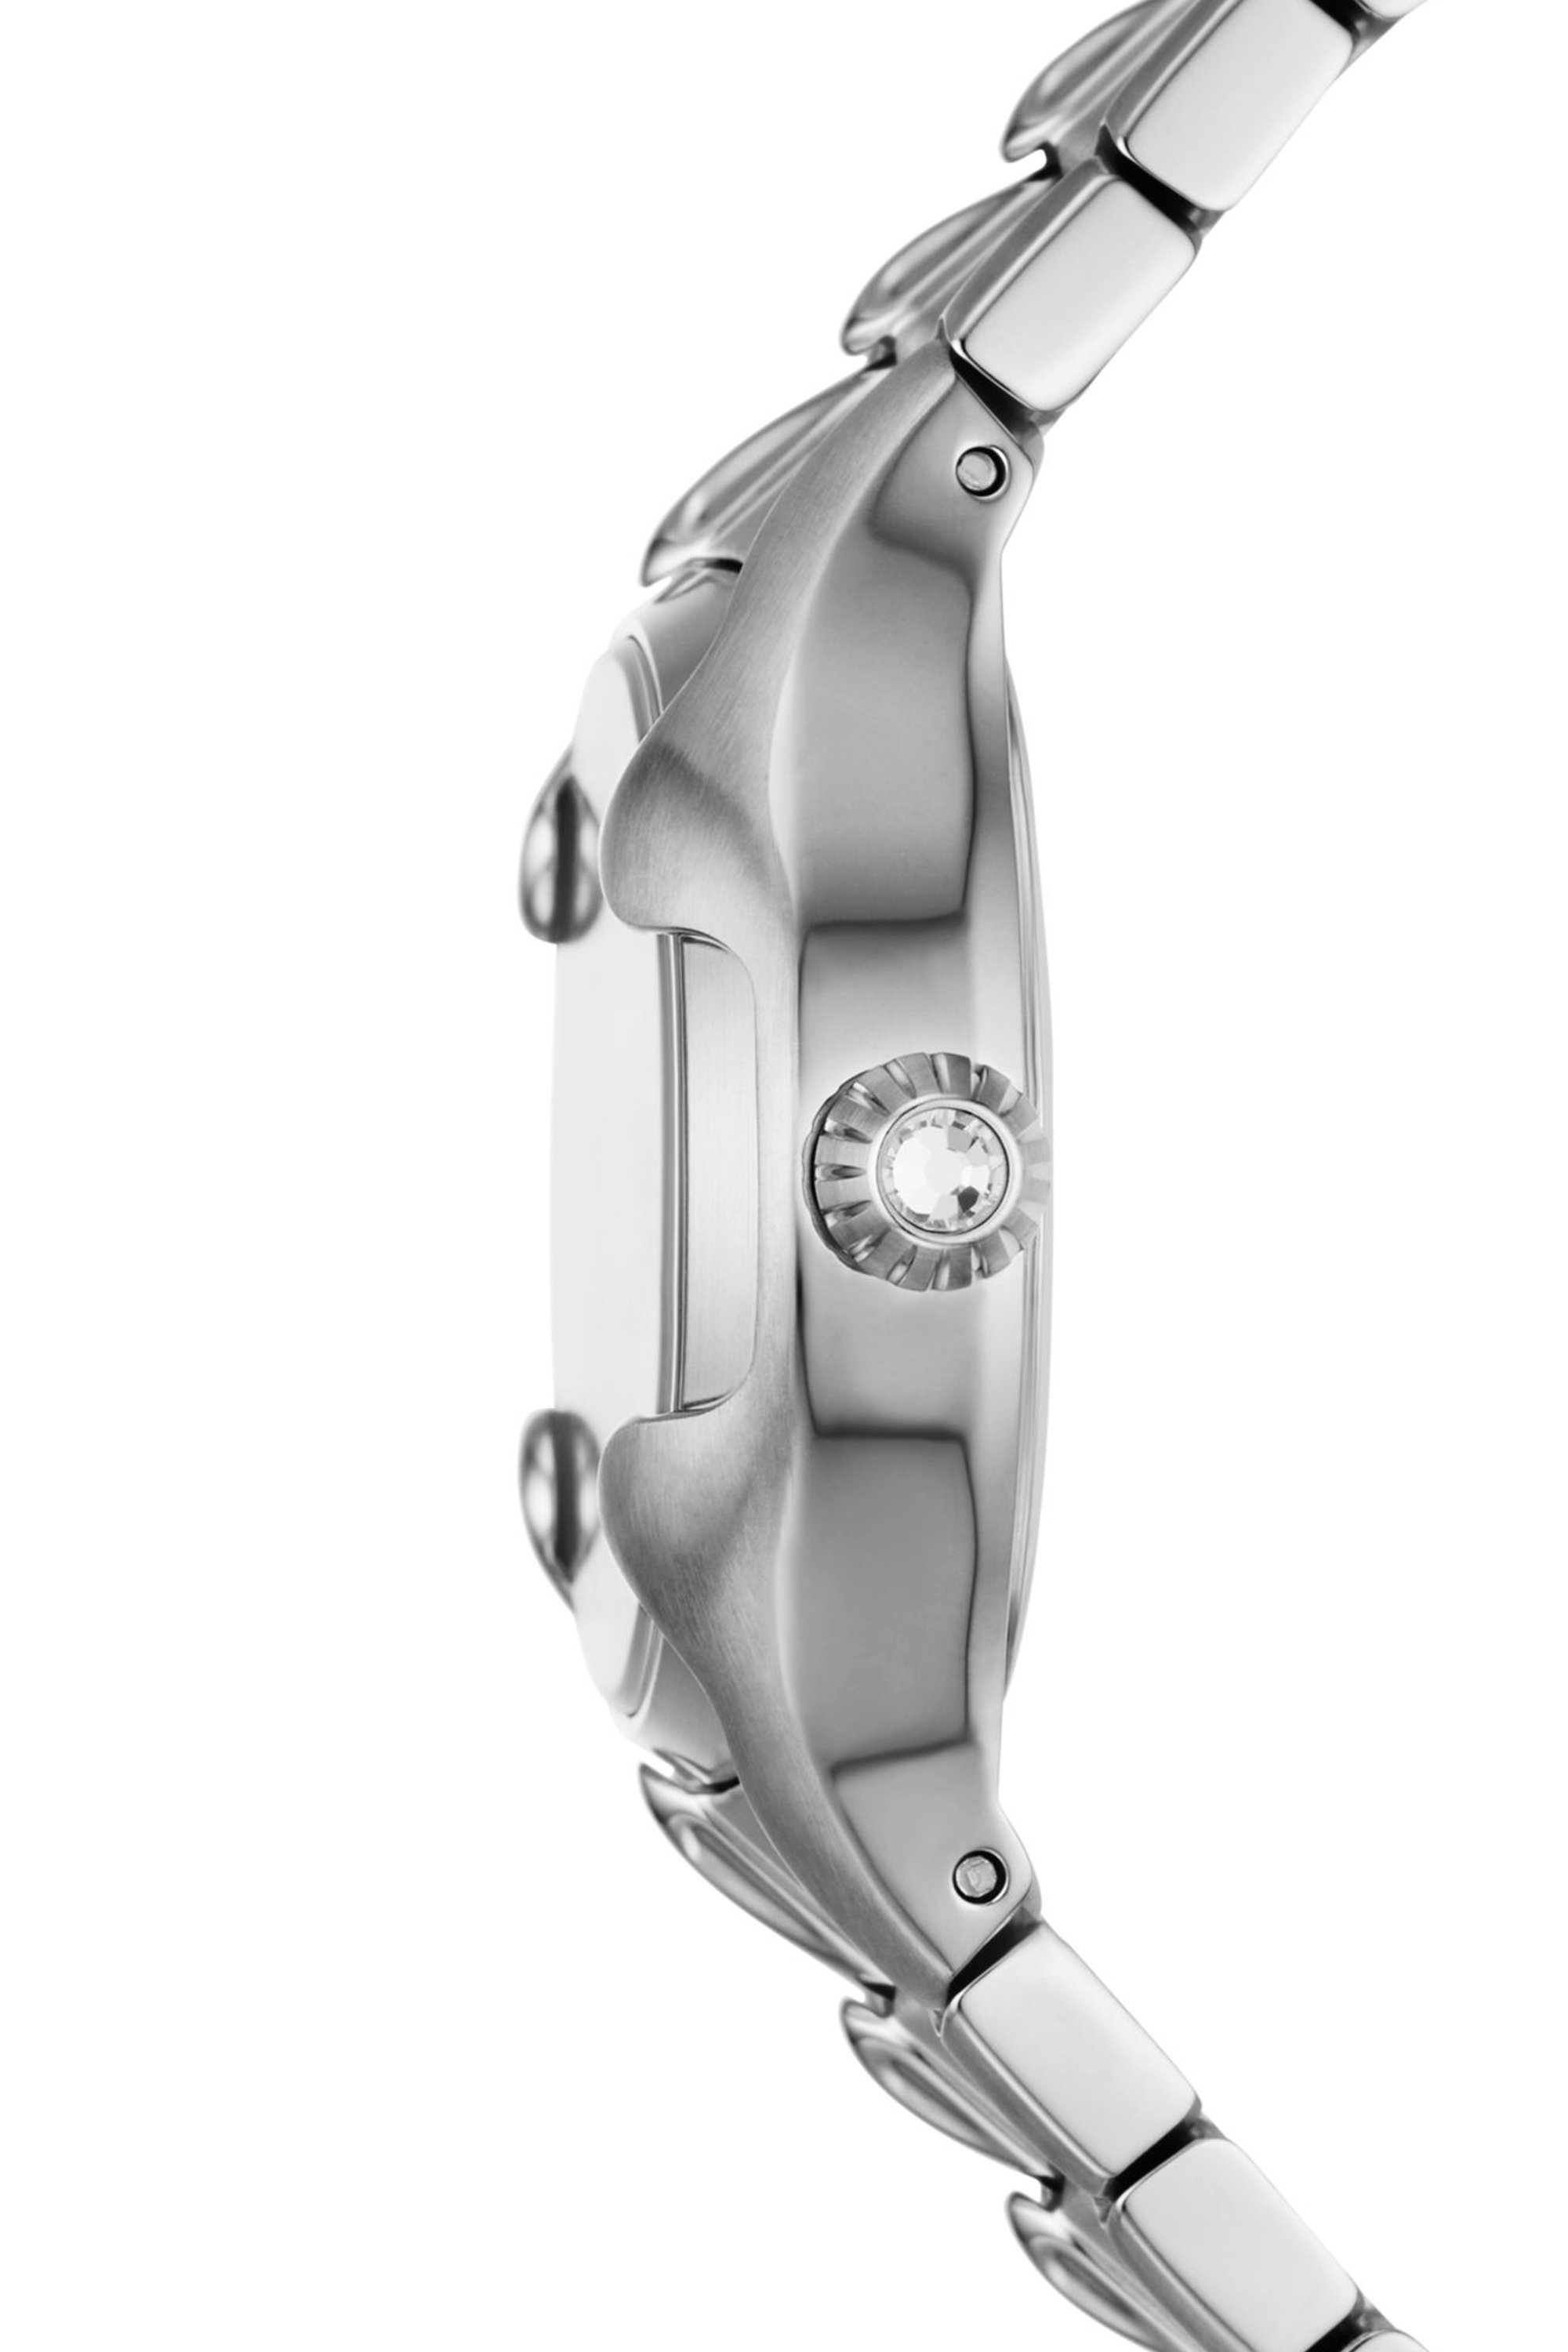 Diesel - DZ5605, Damen Vert Armbanduhr aus Edelstahl mit drei Zeigern in Silber - Image 3